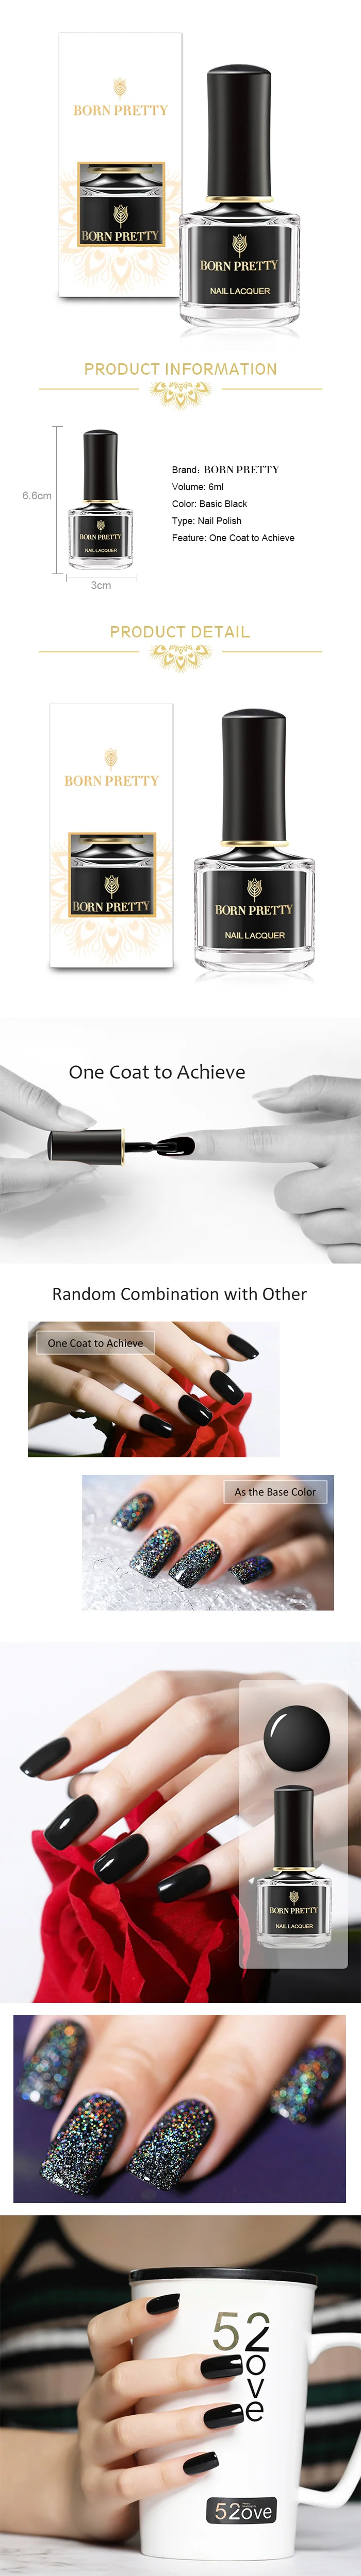 BORN PRETTY черный лак для ногтей 6 мл чистый цвет для ногтей Базовая основа лак замачиваемый полный лак для ногтей перламутровый блеск верхнее масло